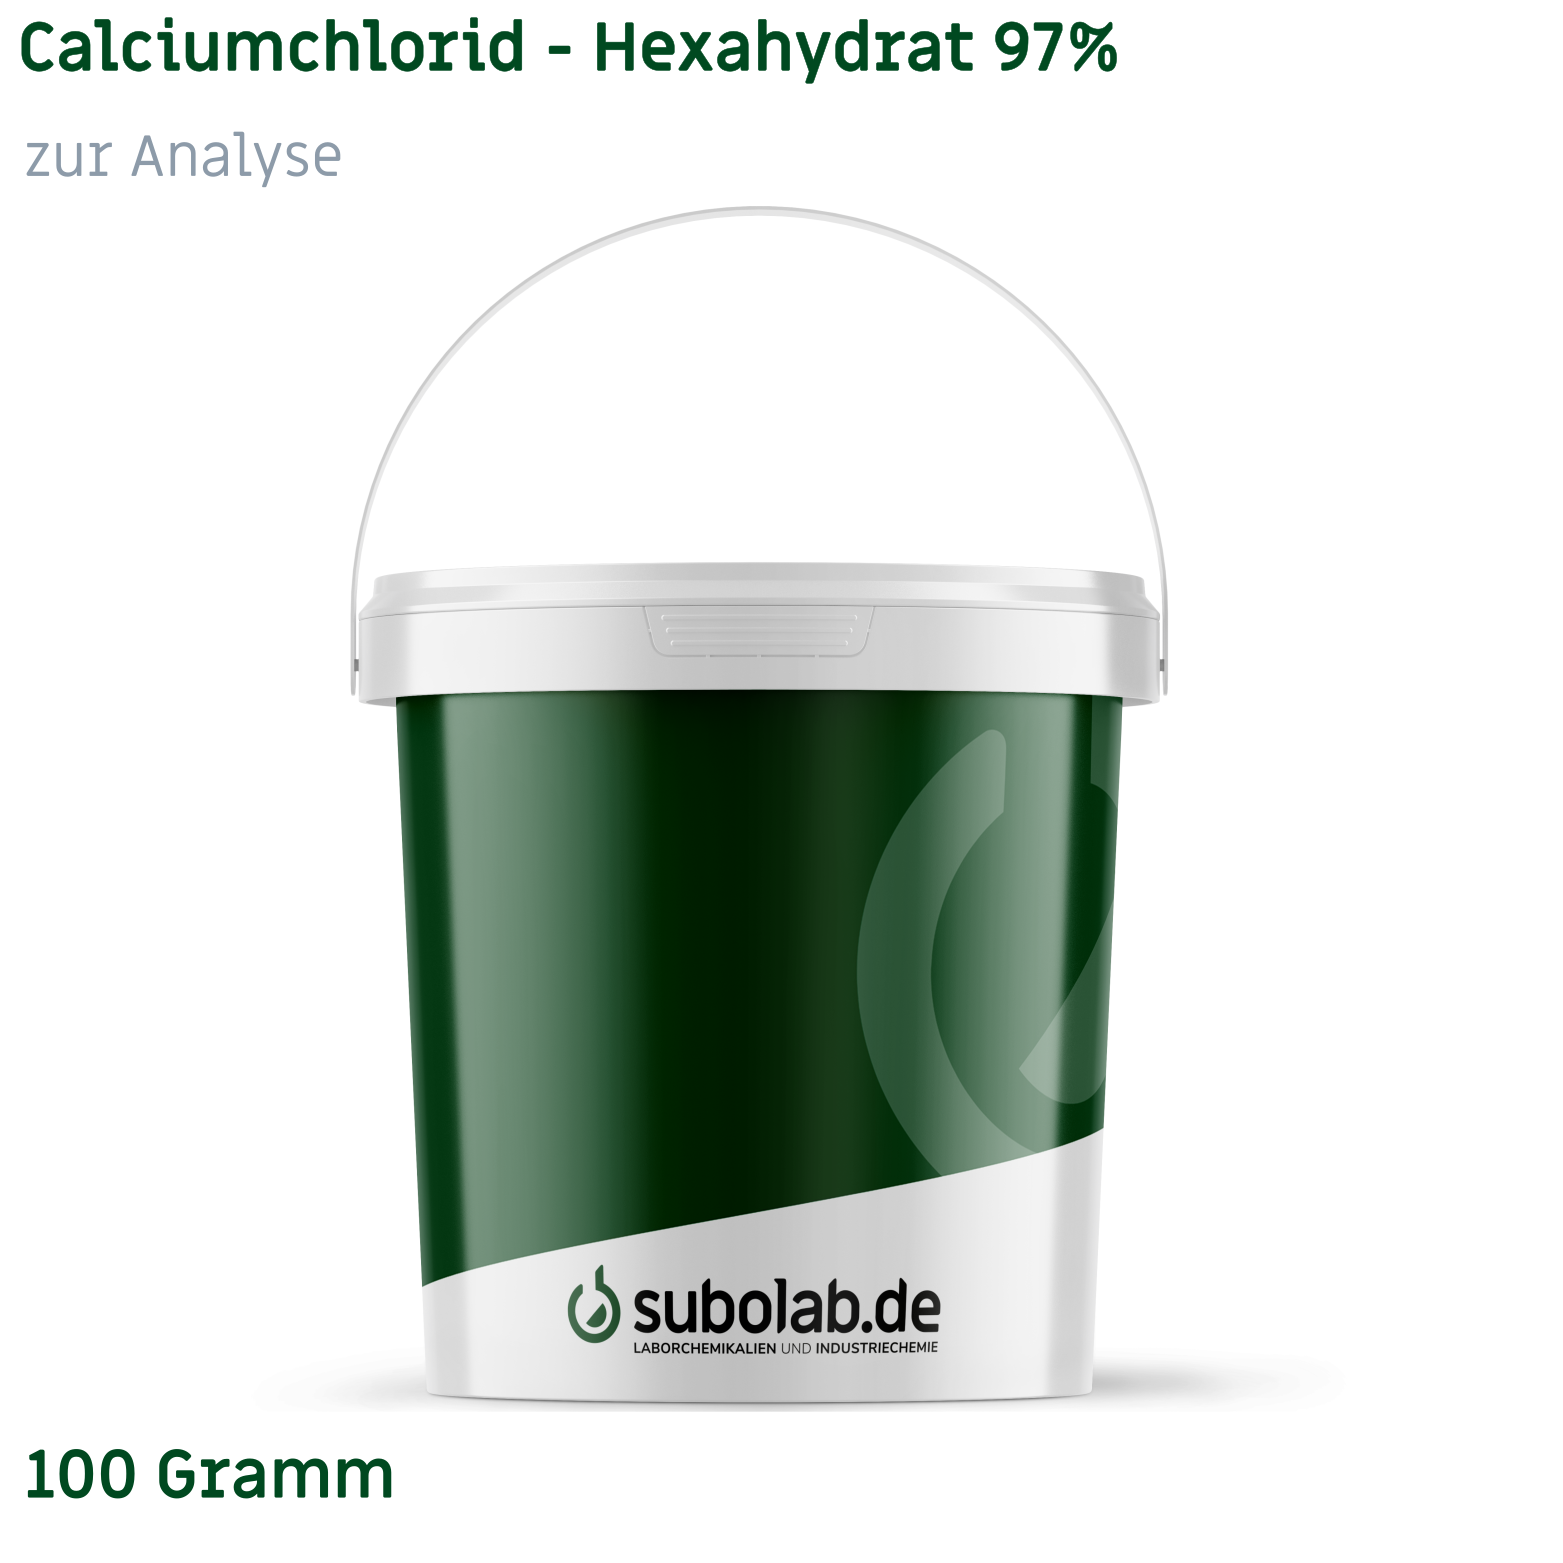 Bild von Calciumchlorid - Hexahydrat 97% zur Analyse (100 Gramm)